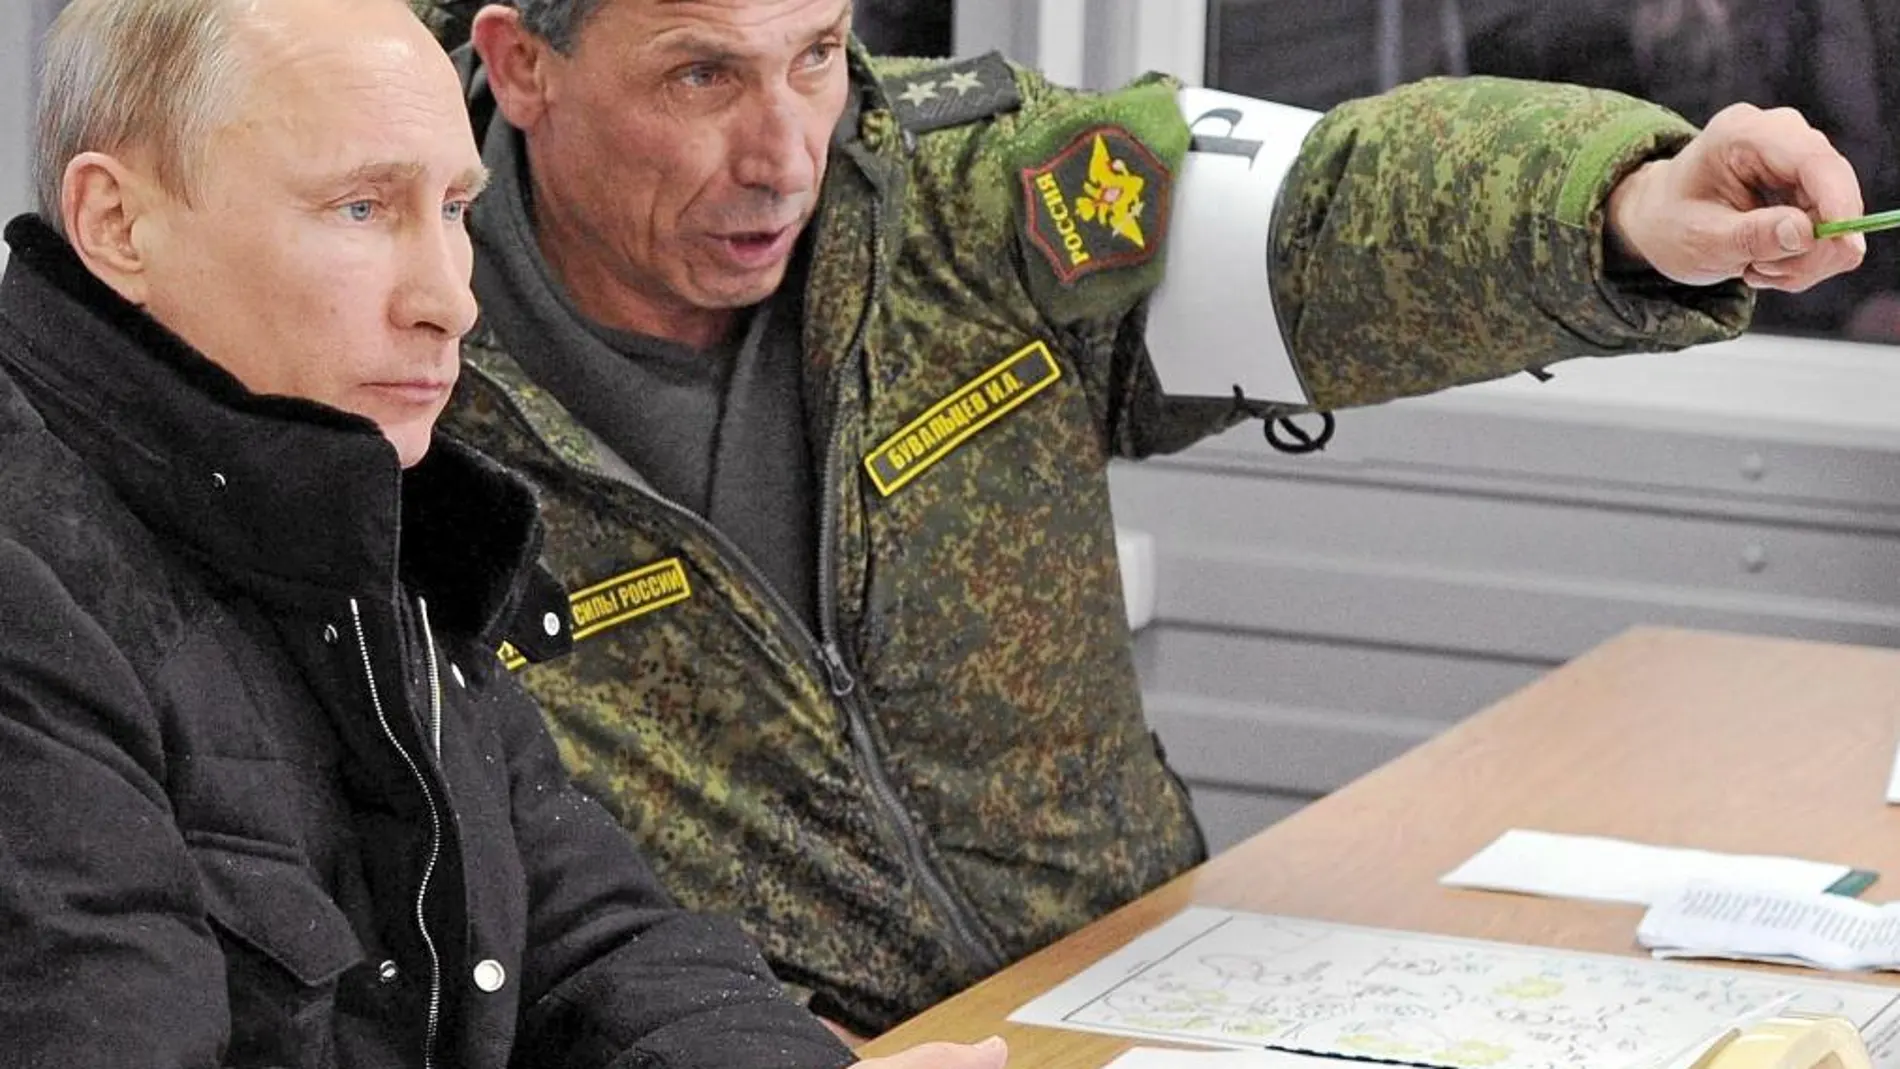 Putin, ayer, observa unos ejercicios militares en San Petersburgo junto al general Ivan Buvaltsev